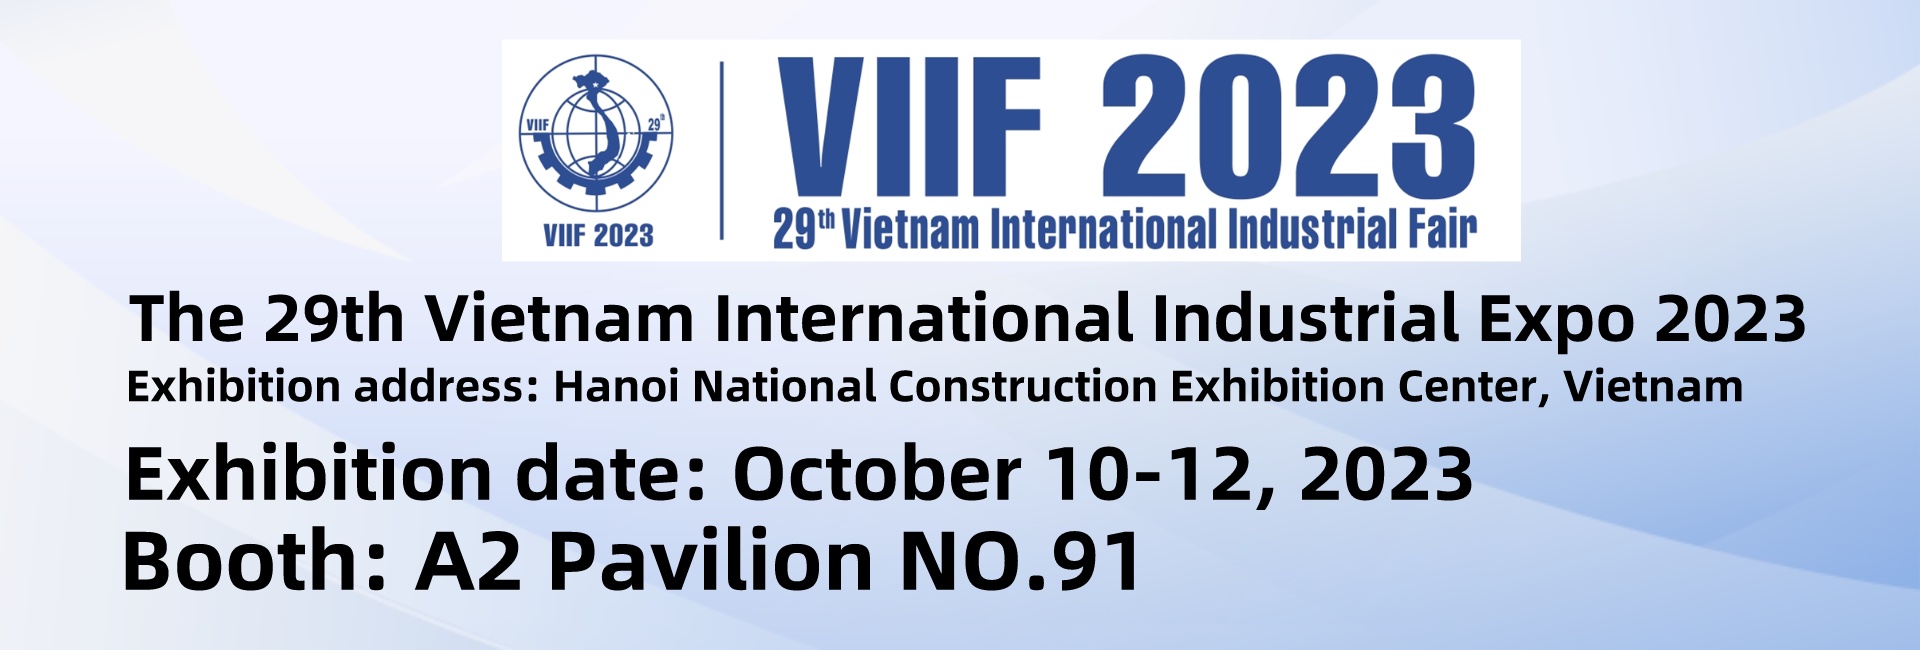 29-oji Vietnamo tarptautinė pramonės paroda 2023 m